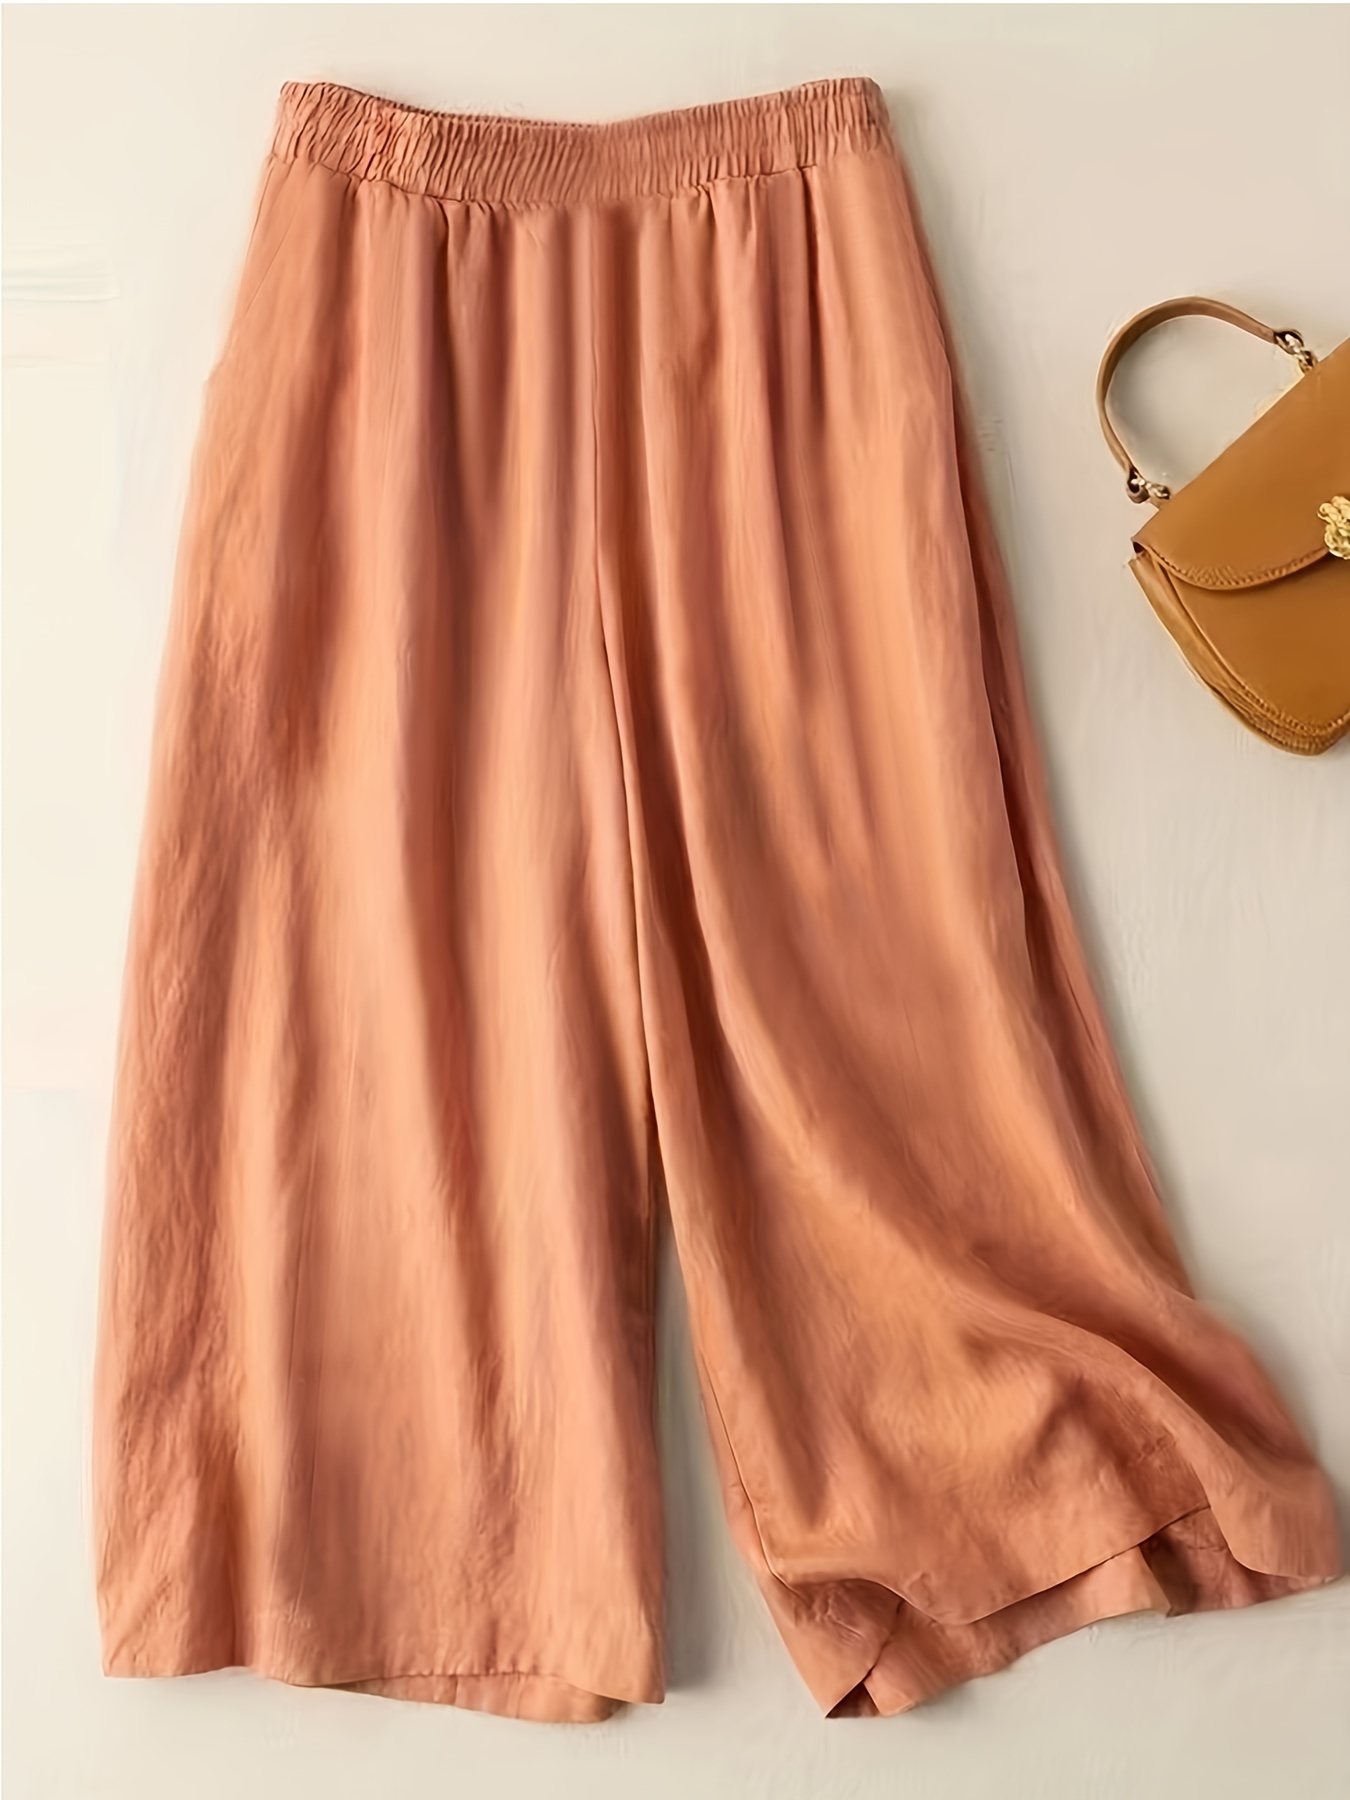 Pantalones capri casuales para mujer, cintura elástica, color sólido, 3/4,  pierna ancha, pantalones de verano con bolsillos